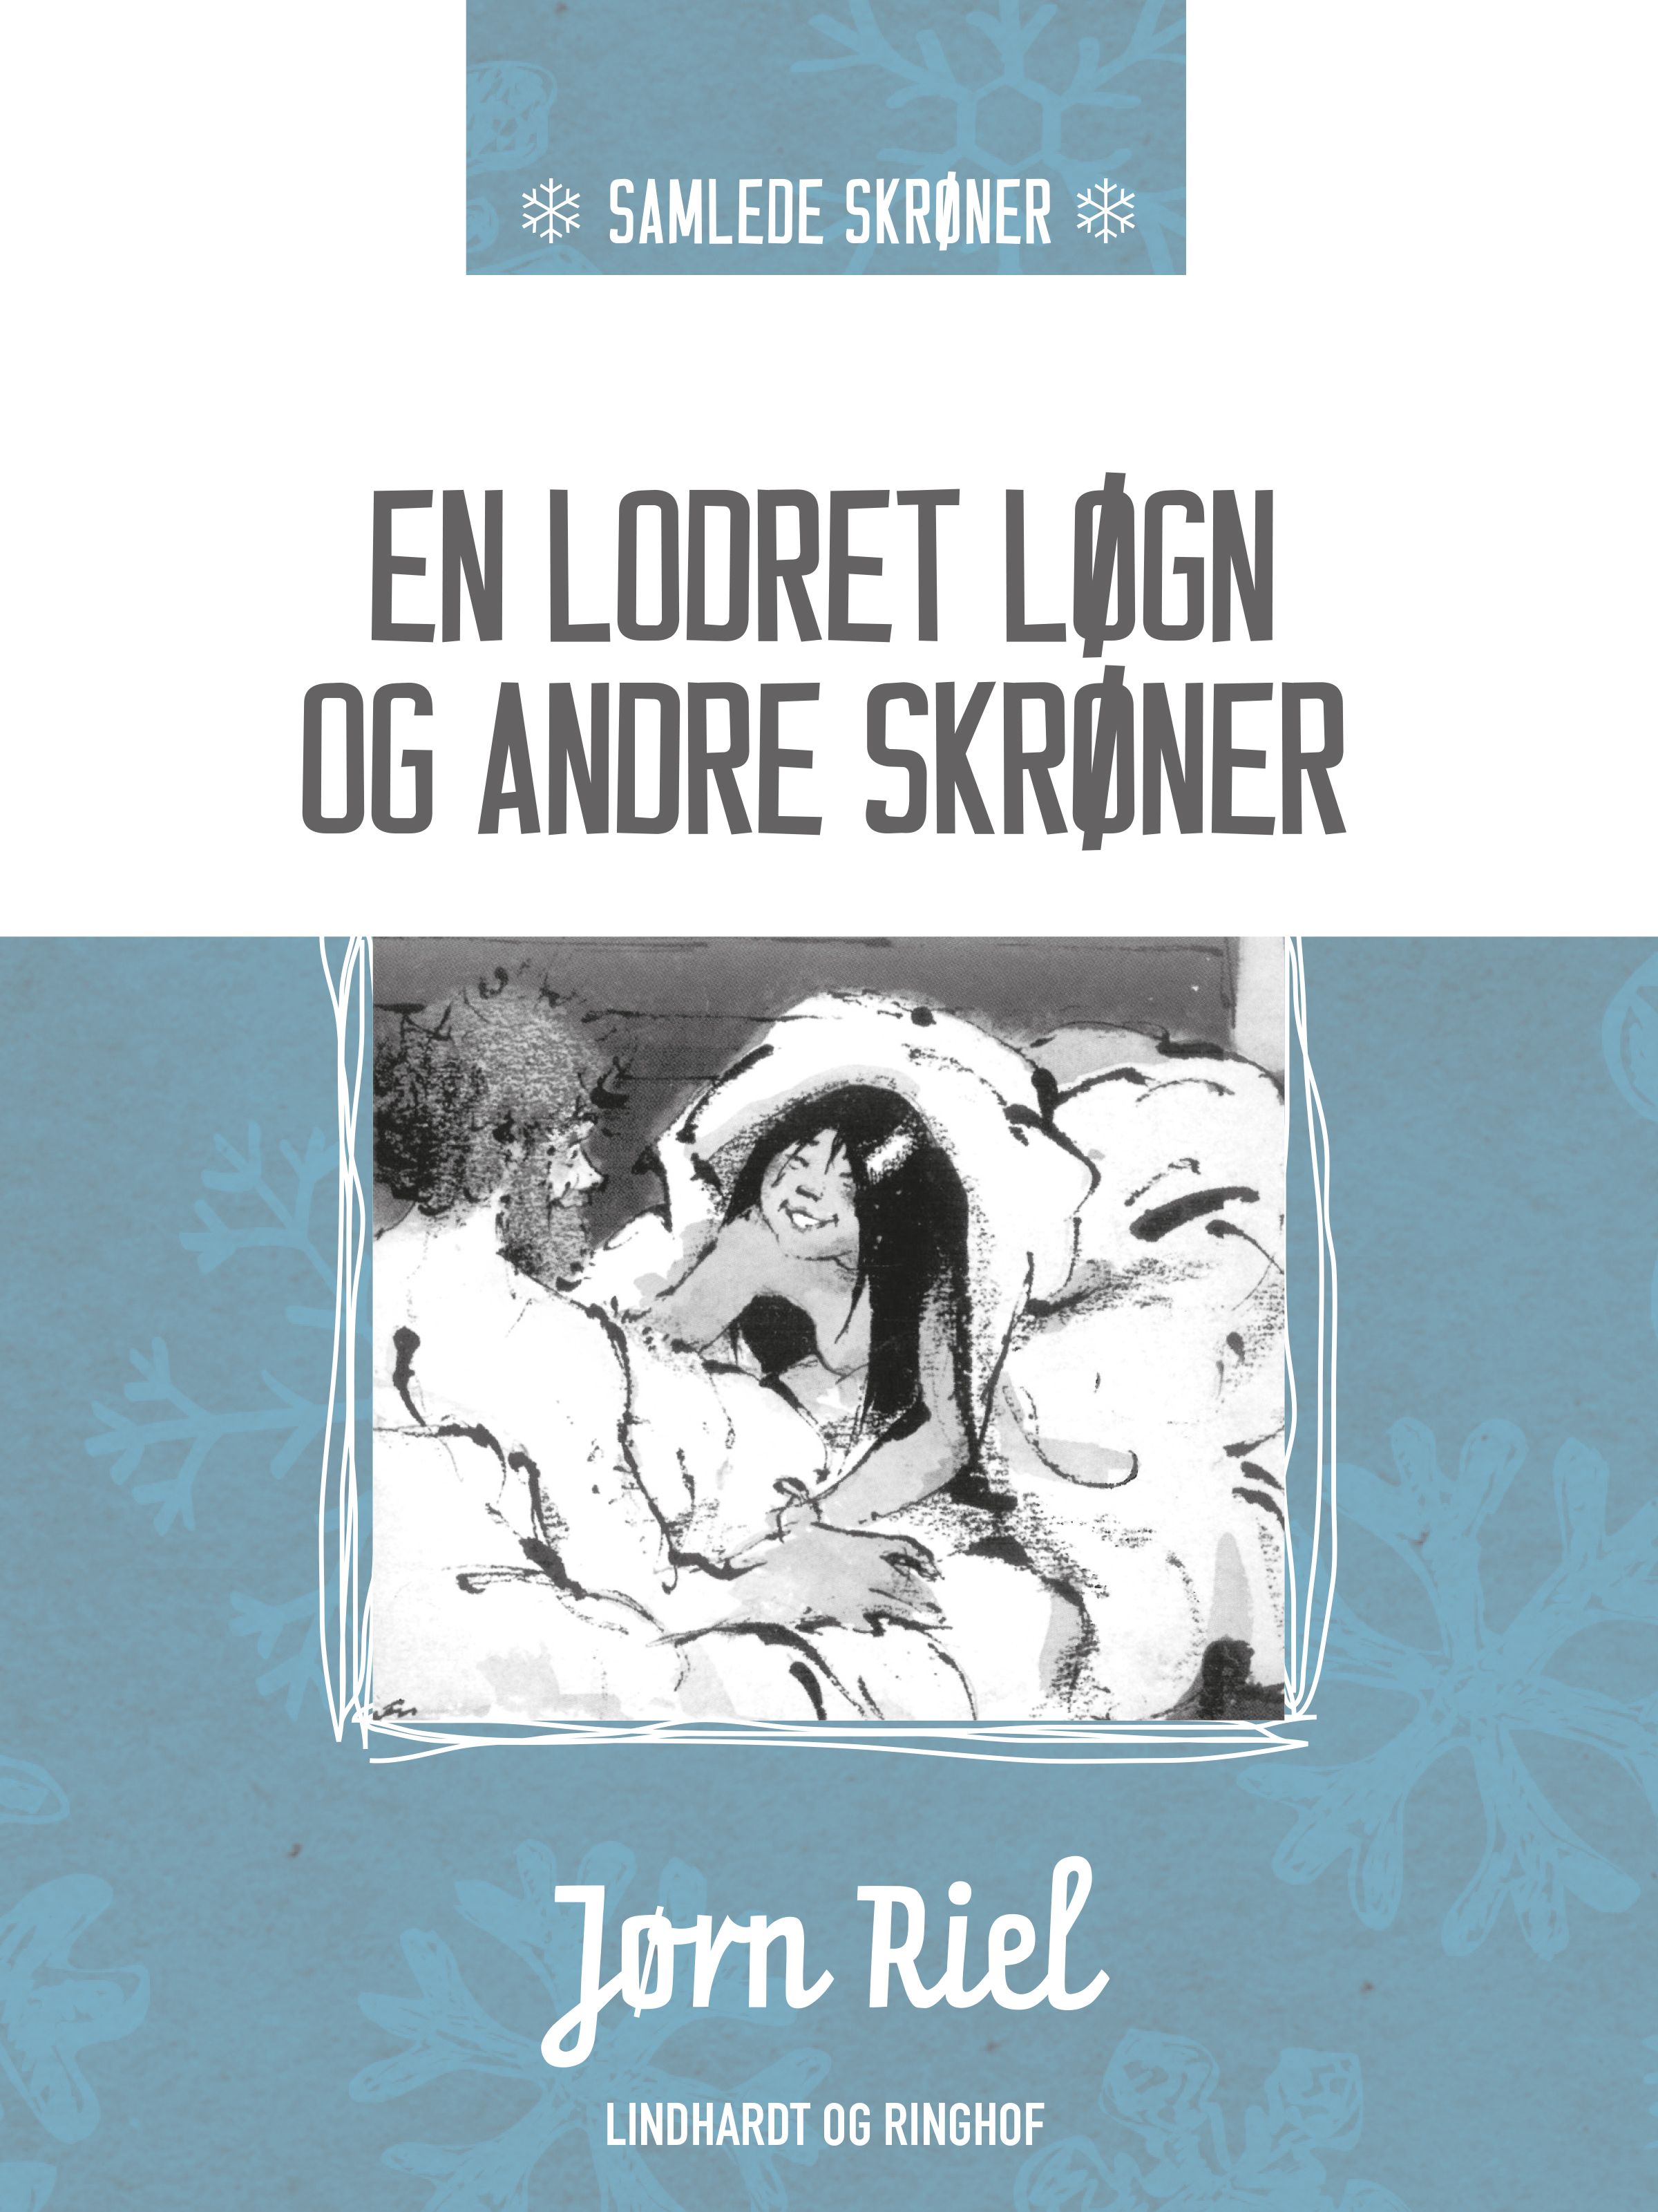 En lodret løgn og andre skrøner, e-bok av Jørn Riel